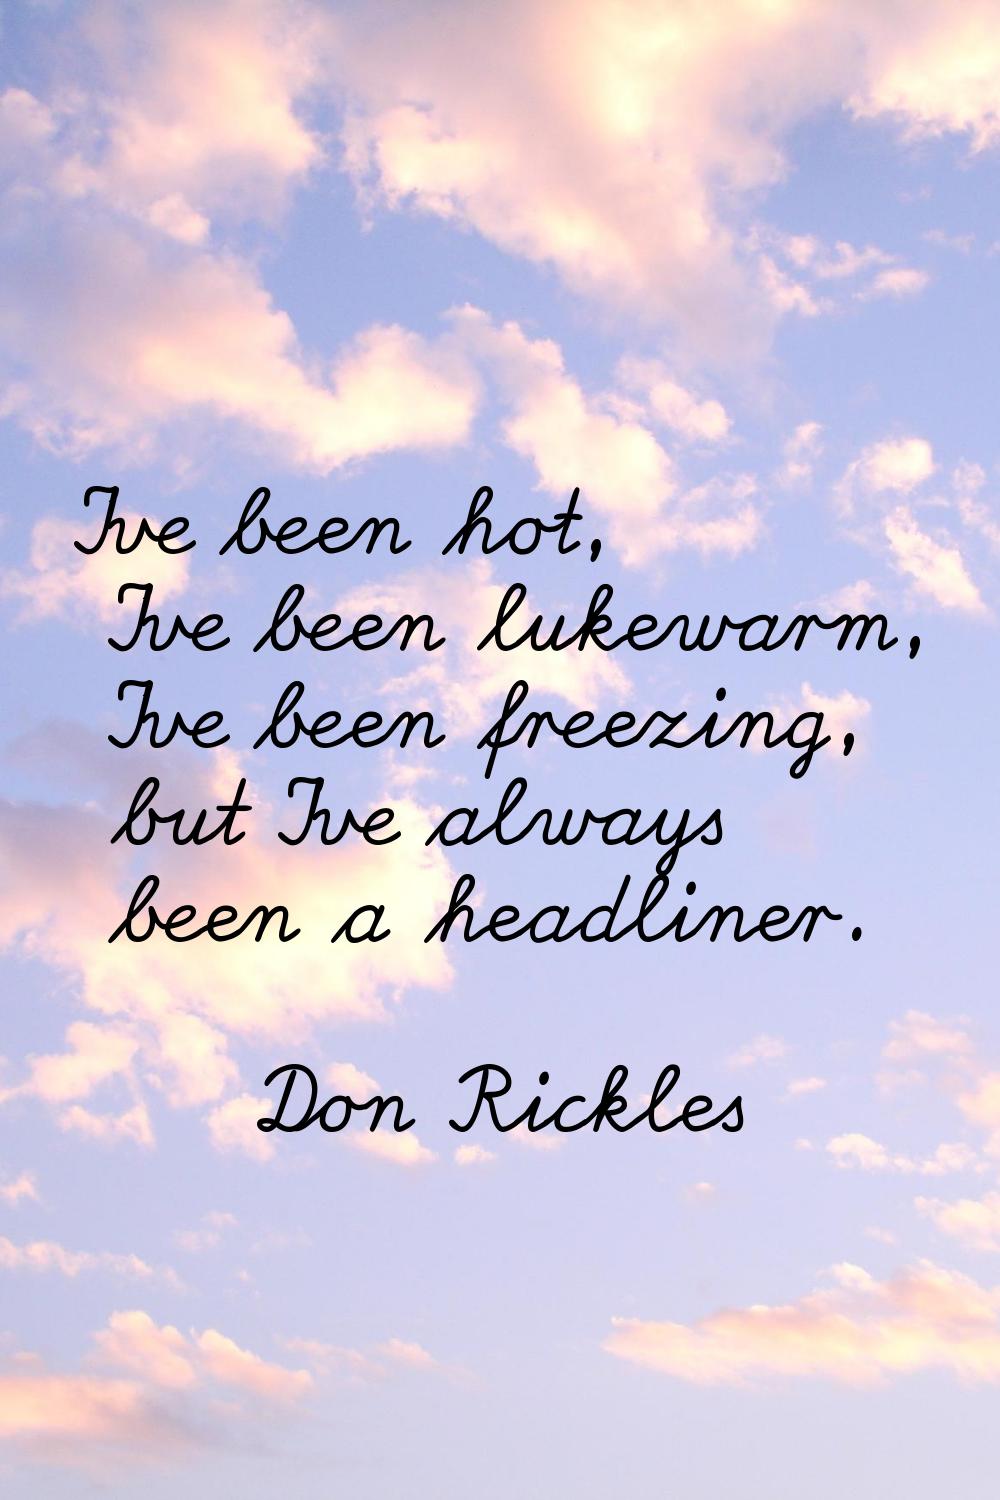 I've been hot, I've been lukewarm, I've been freezing, but I've always been a headliner.